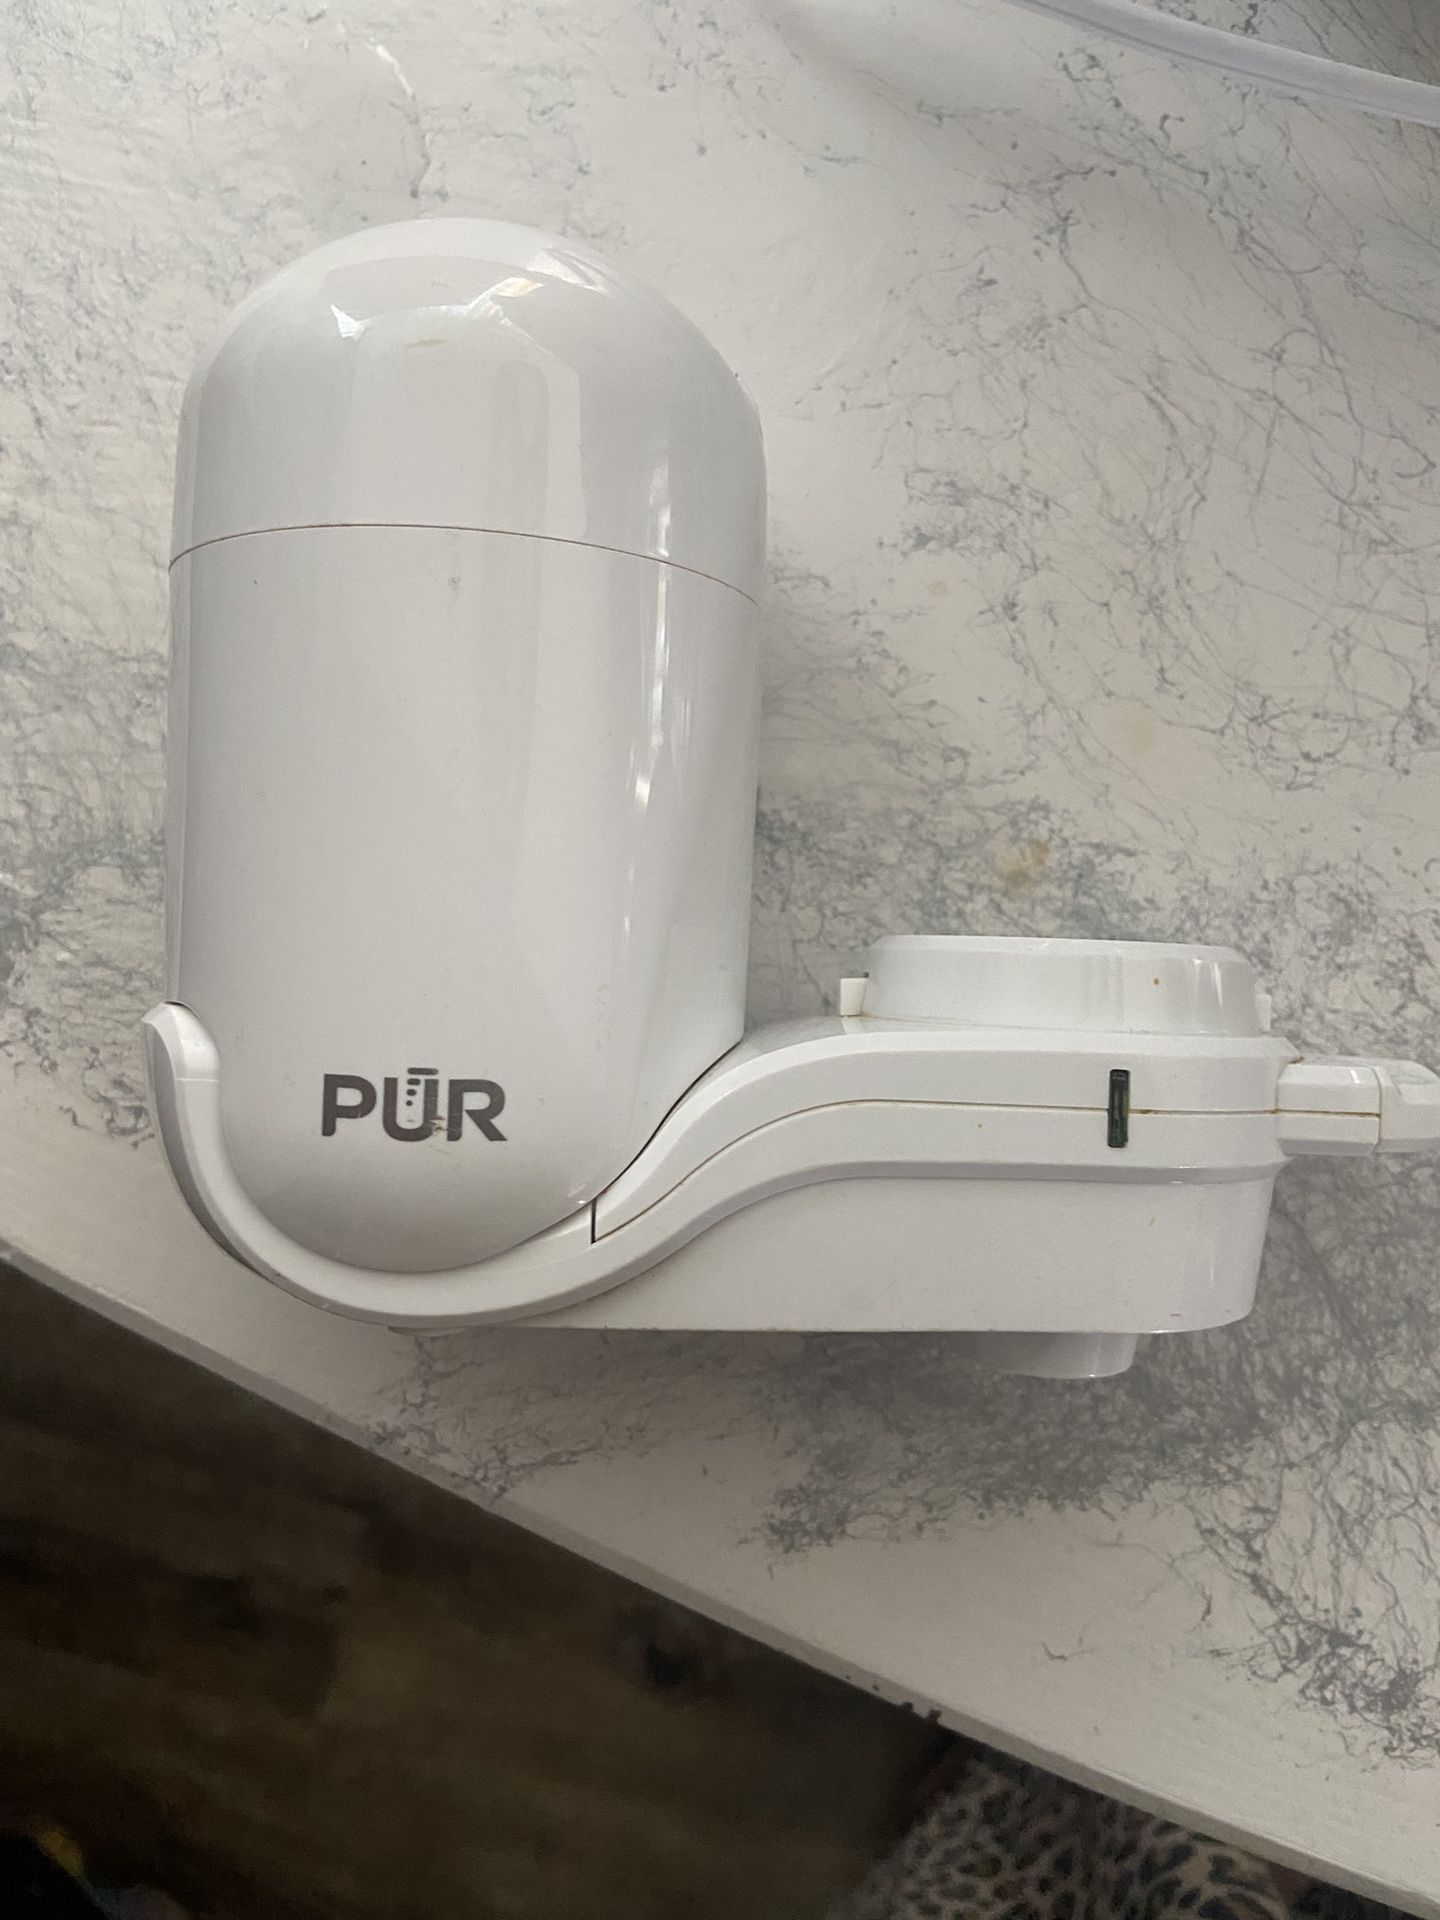 Purr water filter